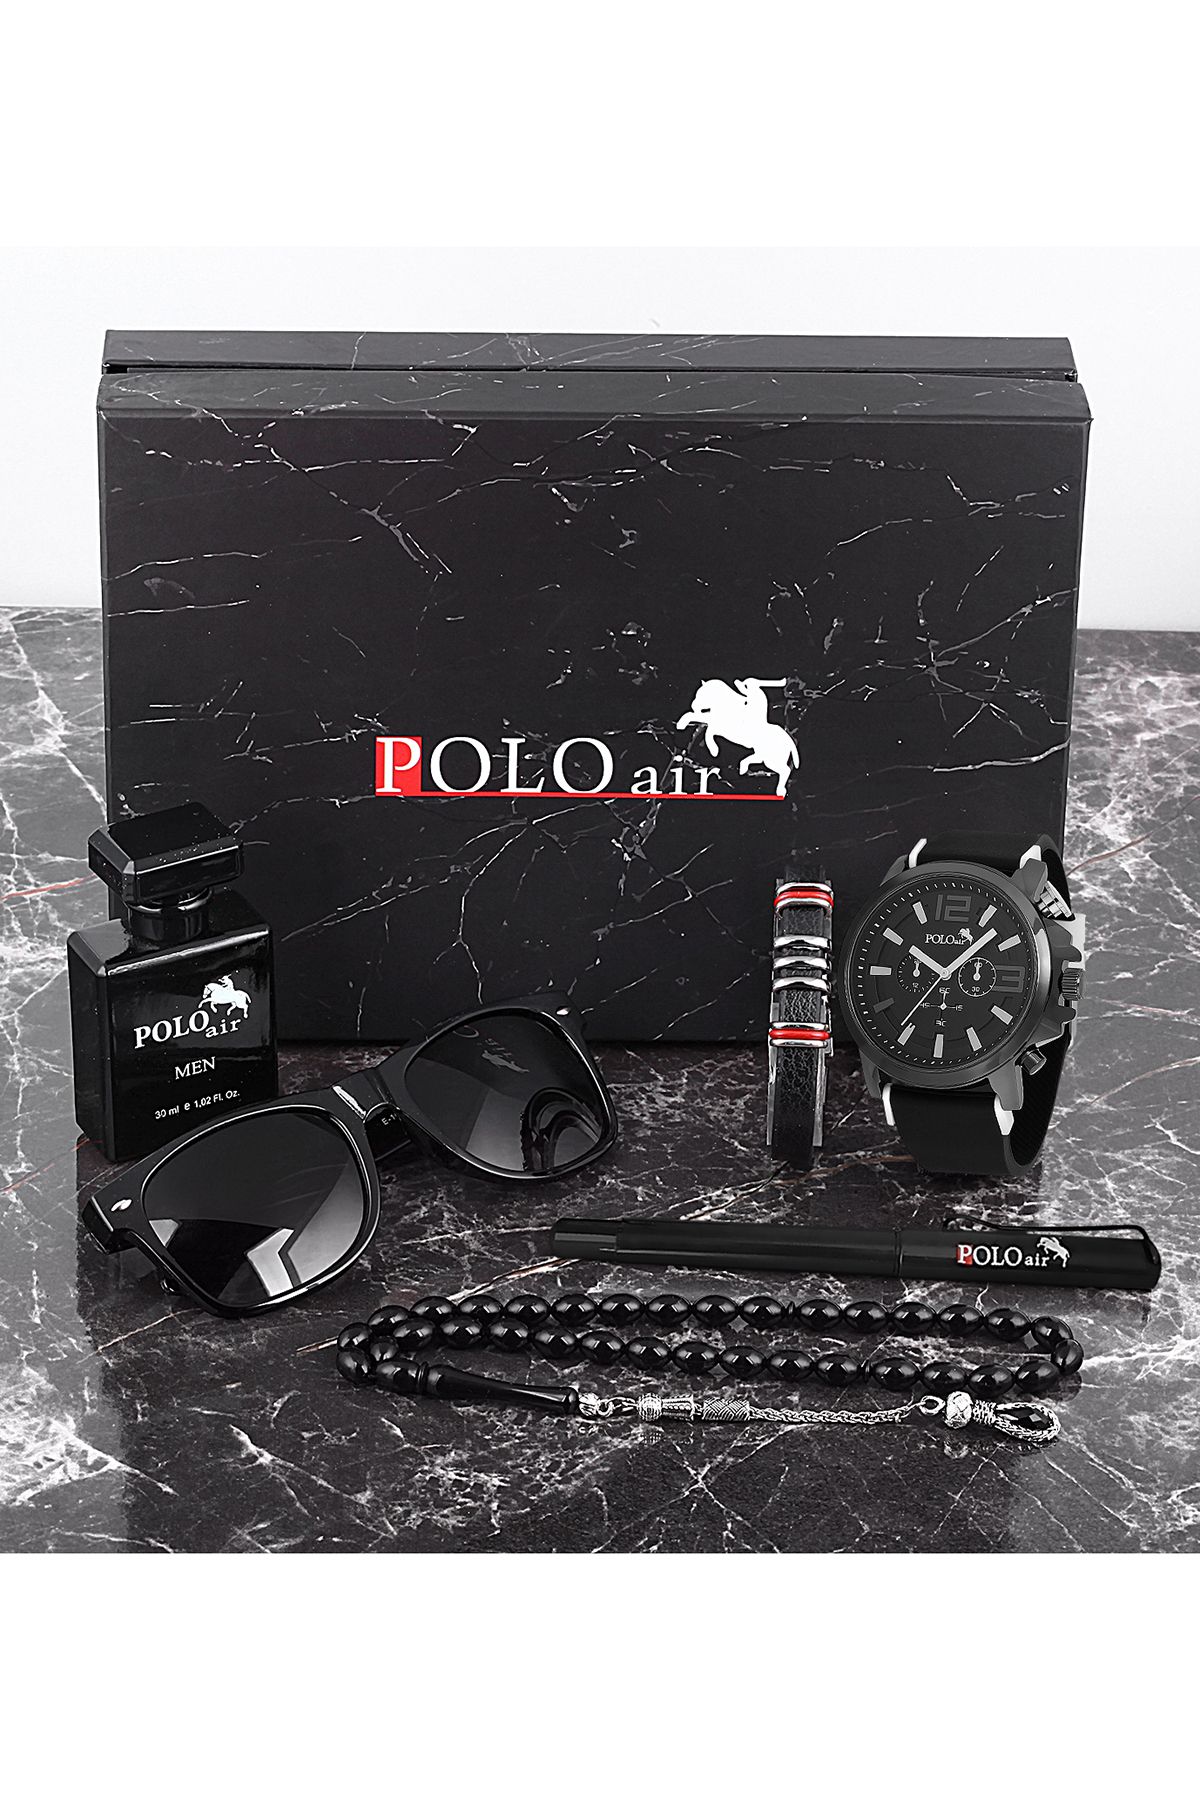 polo air Erkek Set Saat Gözlük Parfüm Tesbih Kalem Bileklik Özel Kutulu Siyah-Beyaz Renk